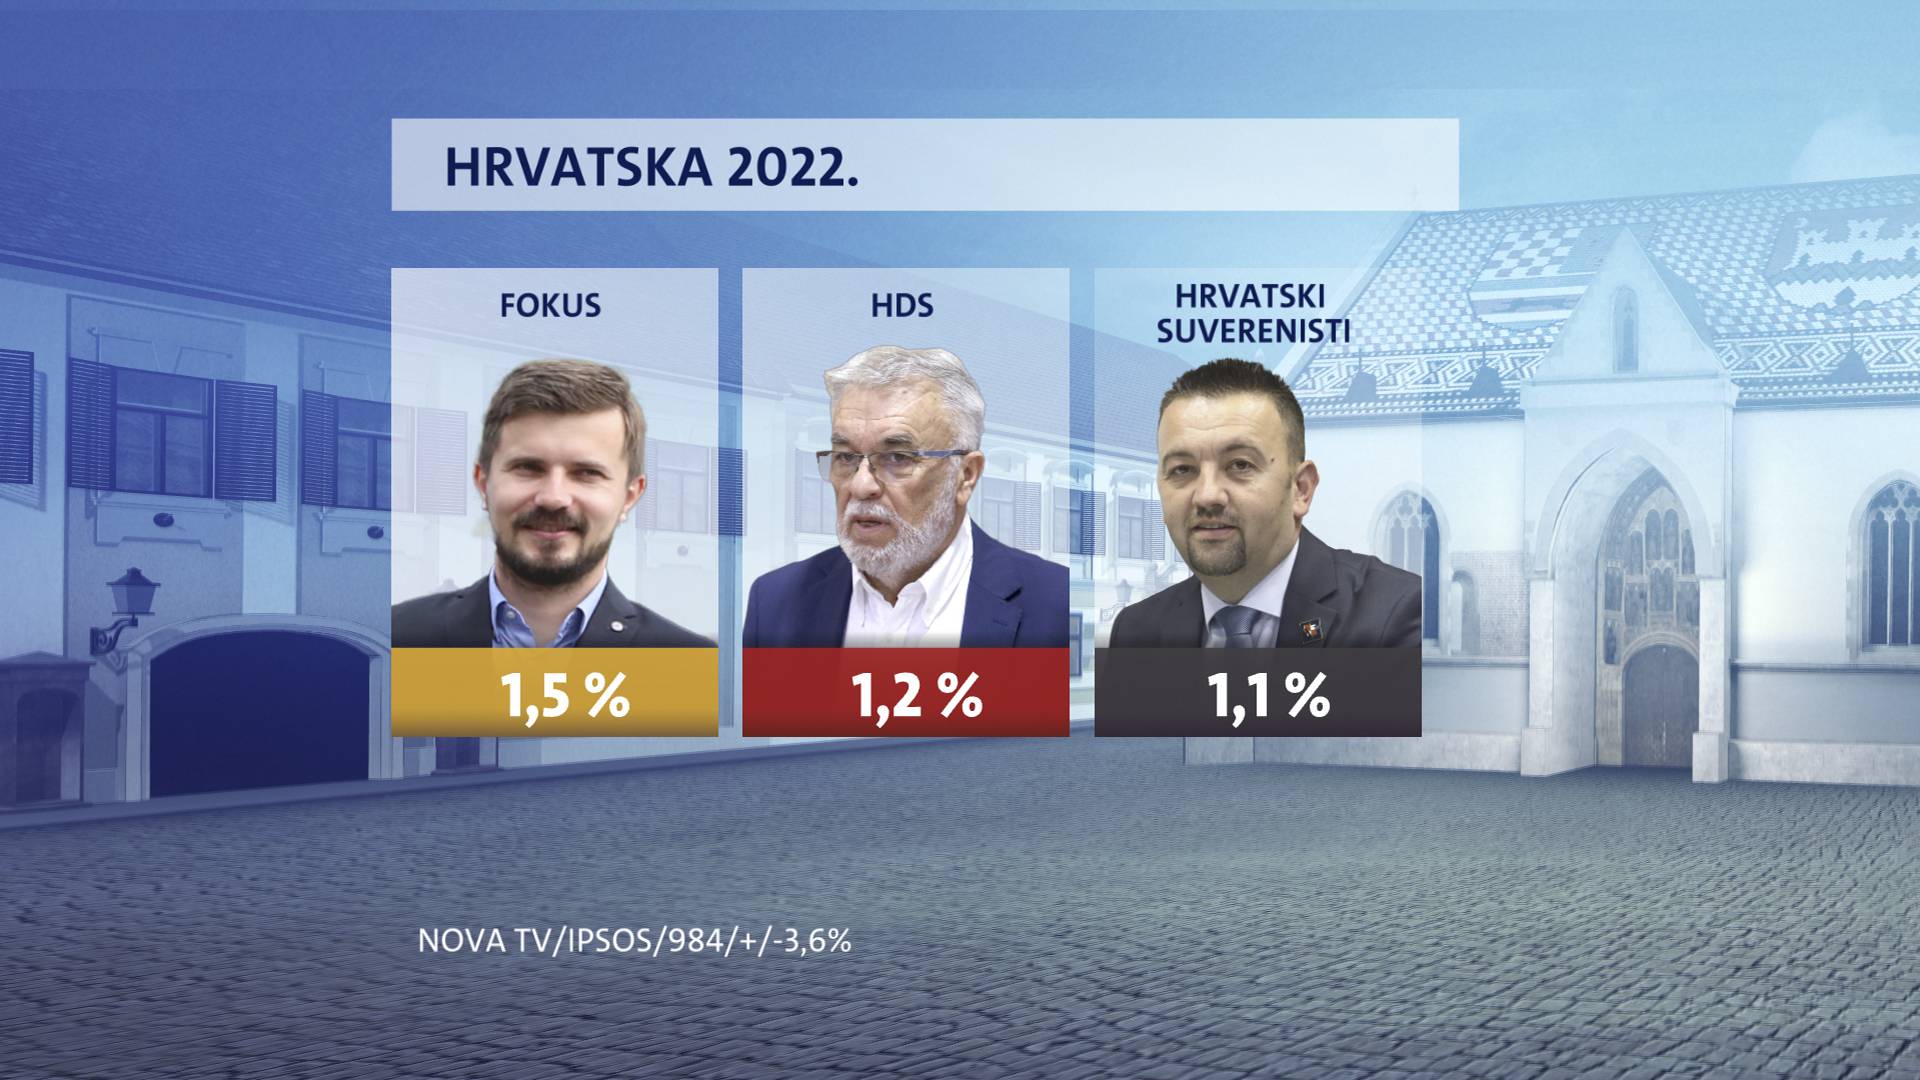 Milanović i dalje najpopularniji političar, nezadovoljstvo radom Vlade je sve veće kod građana